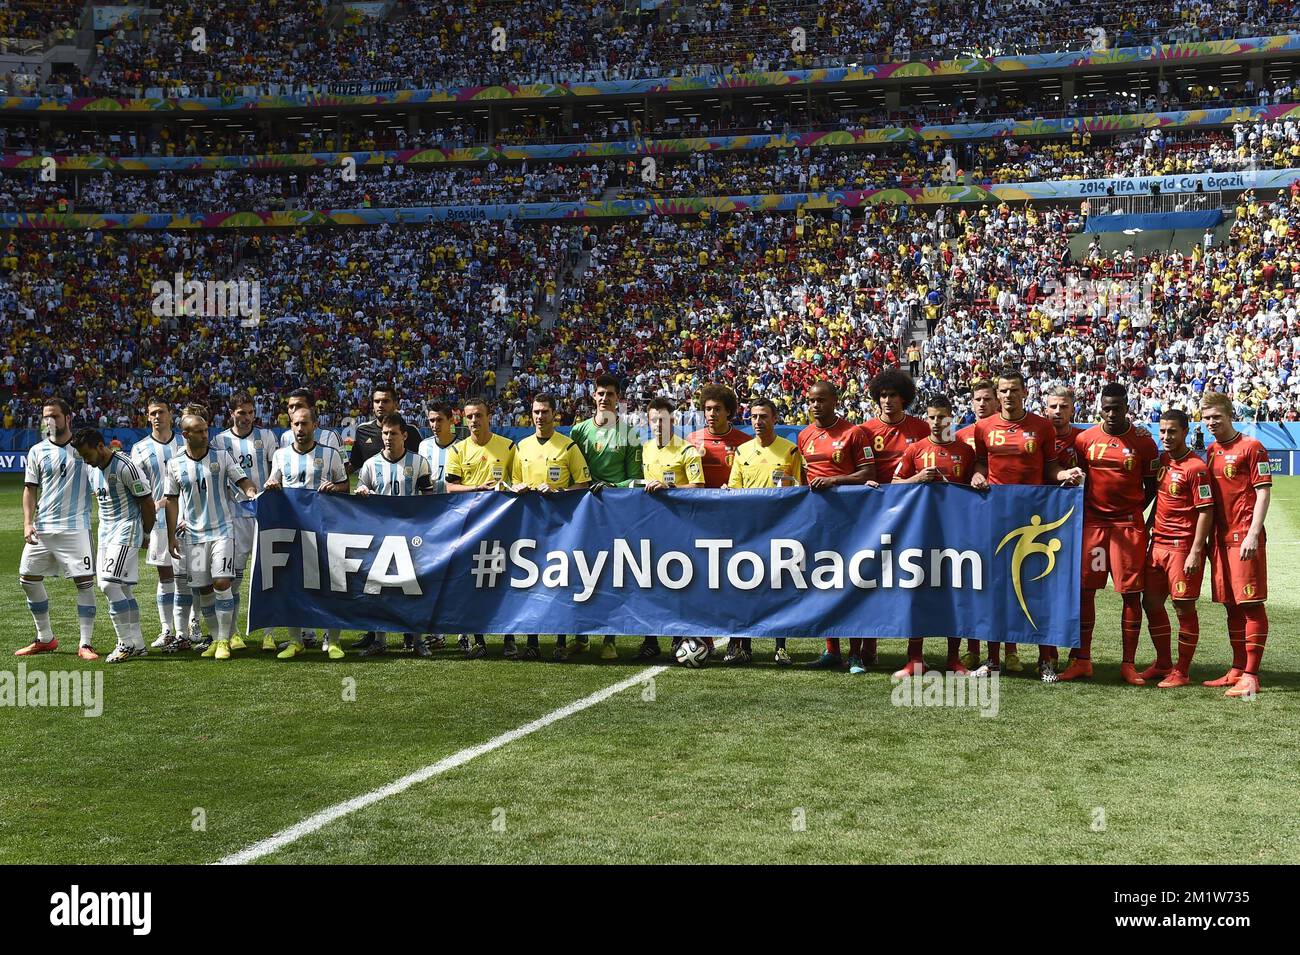 Los jugadores posan con la bandera de la FIFA 'Di NO al racismo' al inicio del partido de cuartos de final entre la selección nacional belga de fútbol Red Devils y Argentina, en el Estadio Nacional Mane Garrincha, en Brasilia, Brasil, durante la Copa Mundial de la FIFA 2014, el sábado 05 de julio de 2014. Foto de stock